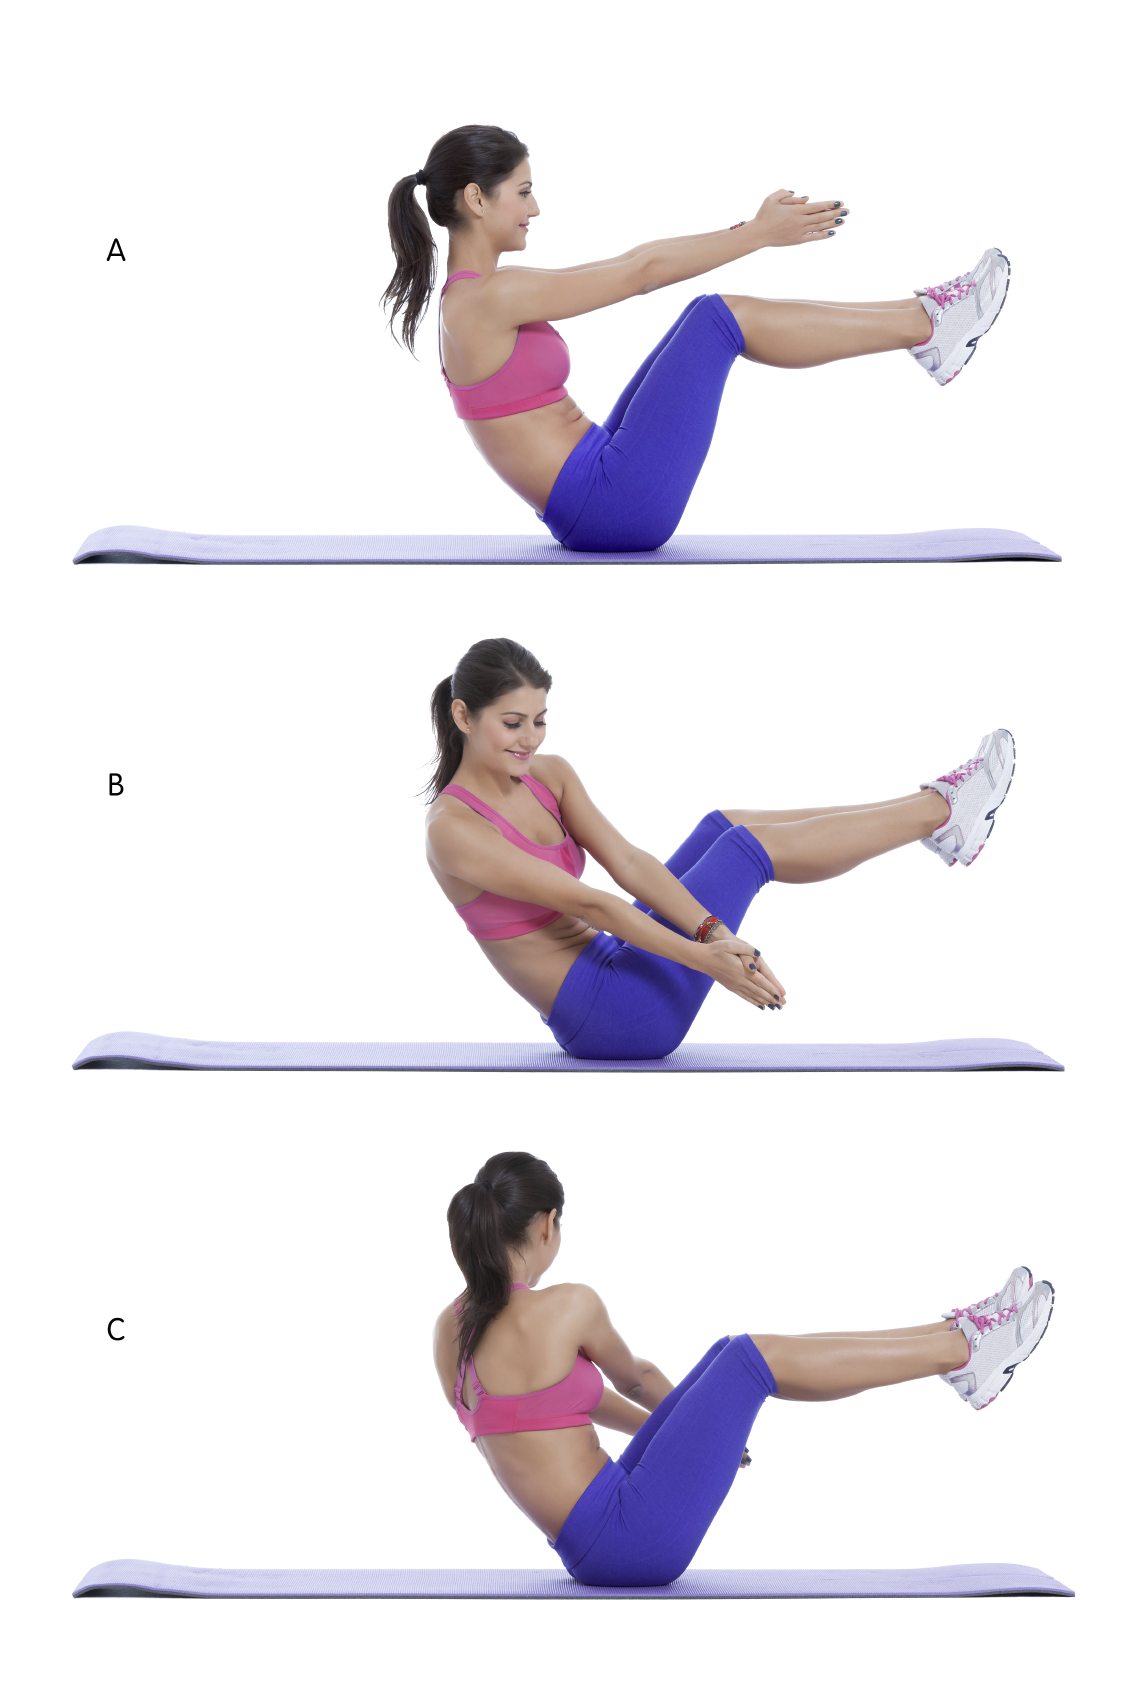 ejercicio de flexion para reducir cintura y aumentar gluteos